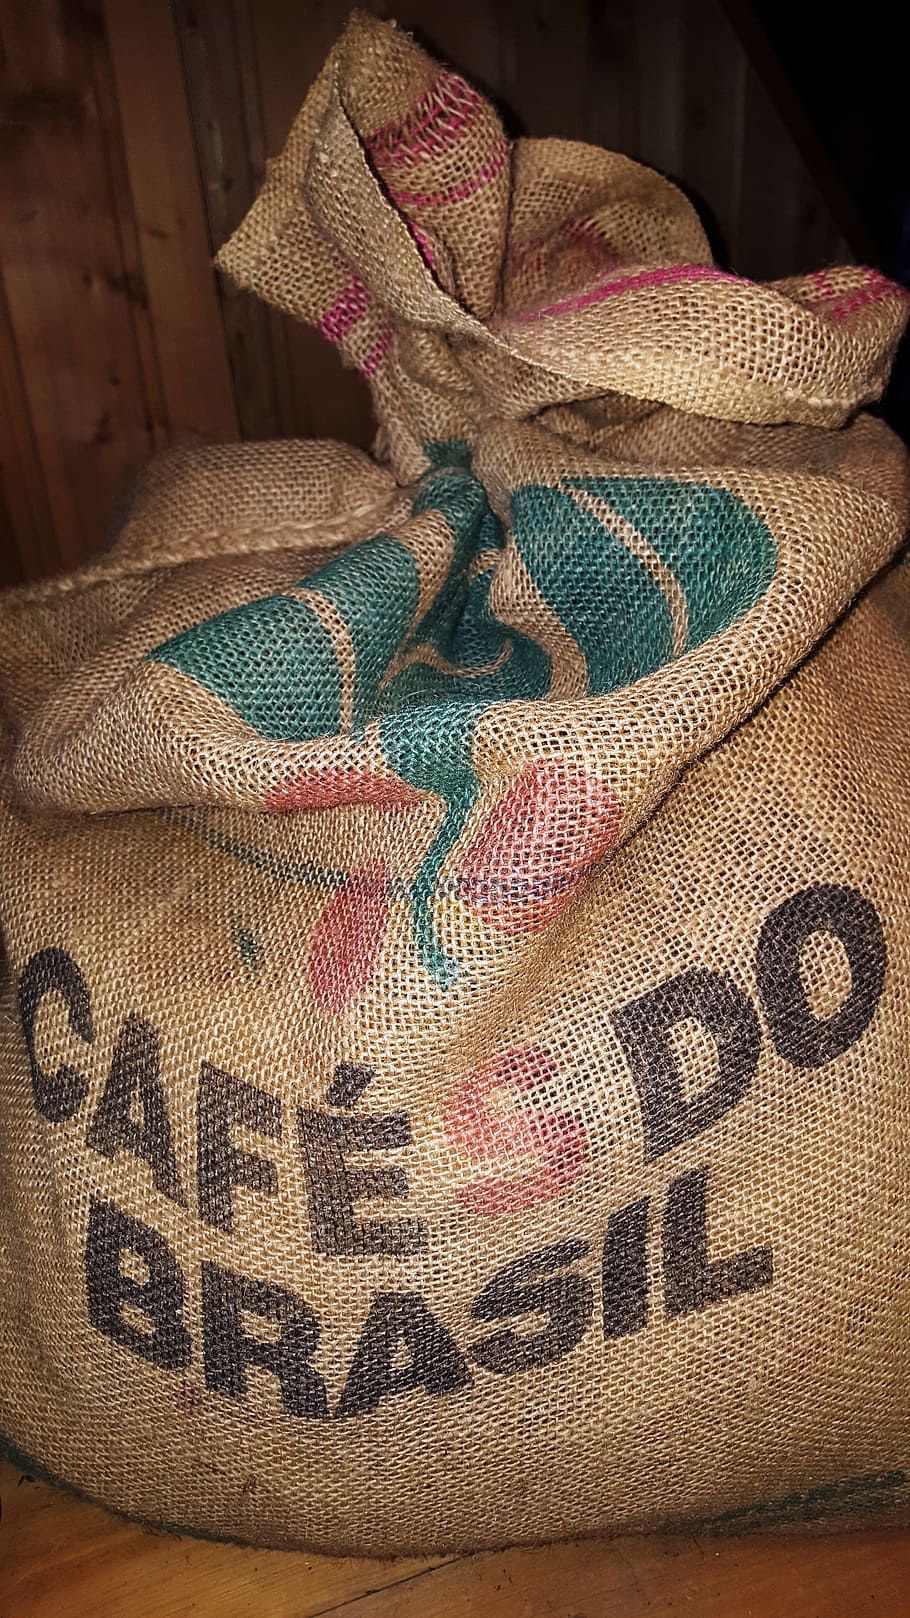 coffee, bag, brown, brasil, textile, no people, indoors, sack